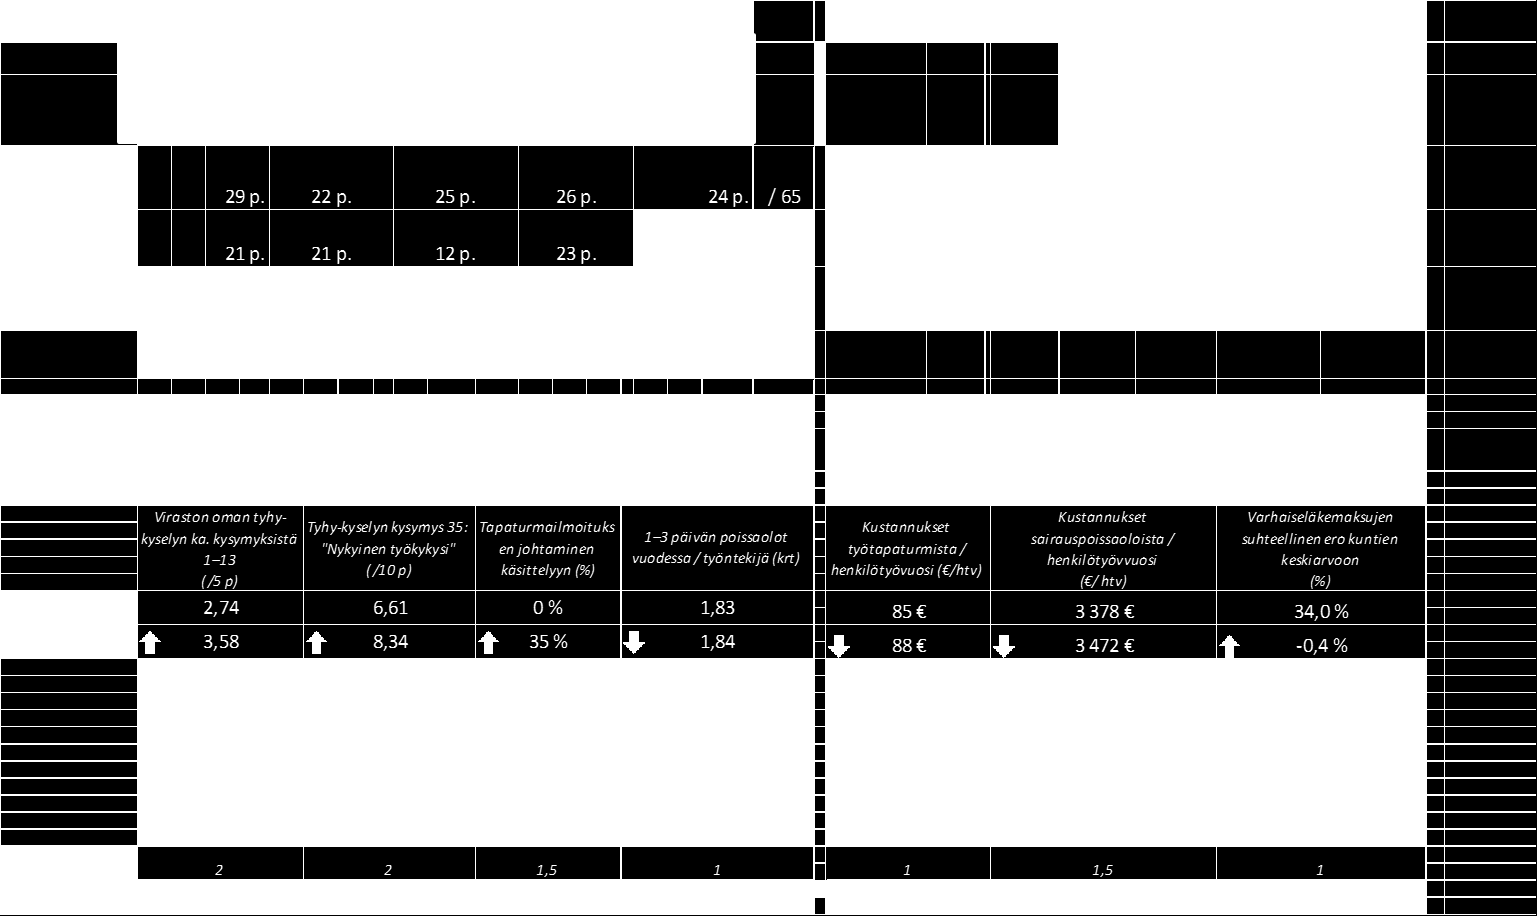 36 Rootelitason raporttipohja (kuva 11) esittelee kaikki viisi rootelia rinnakkain näkymässä, jossa vertaillaan mittarin kahden pääosa-alueen kokonaispisteitä sekä niiden kehitystä edelliseen vuoteen.